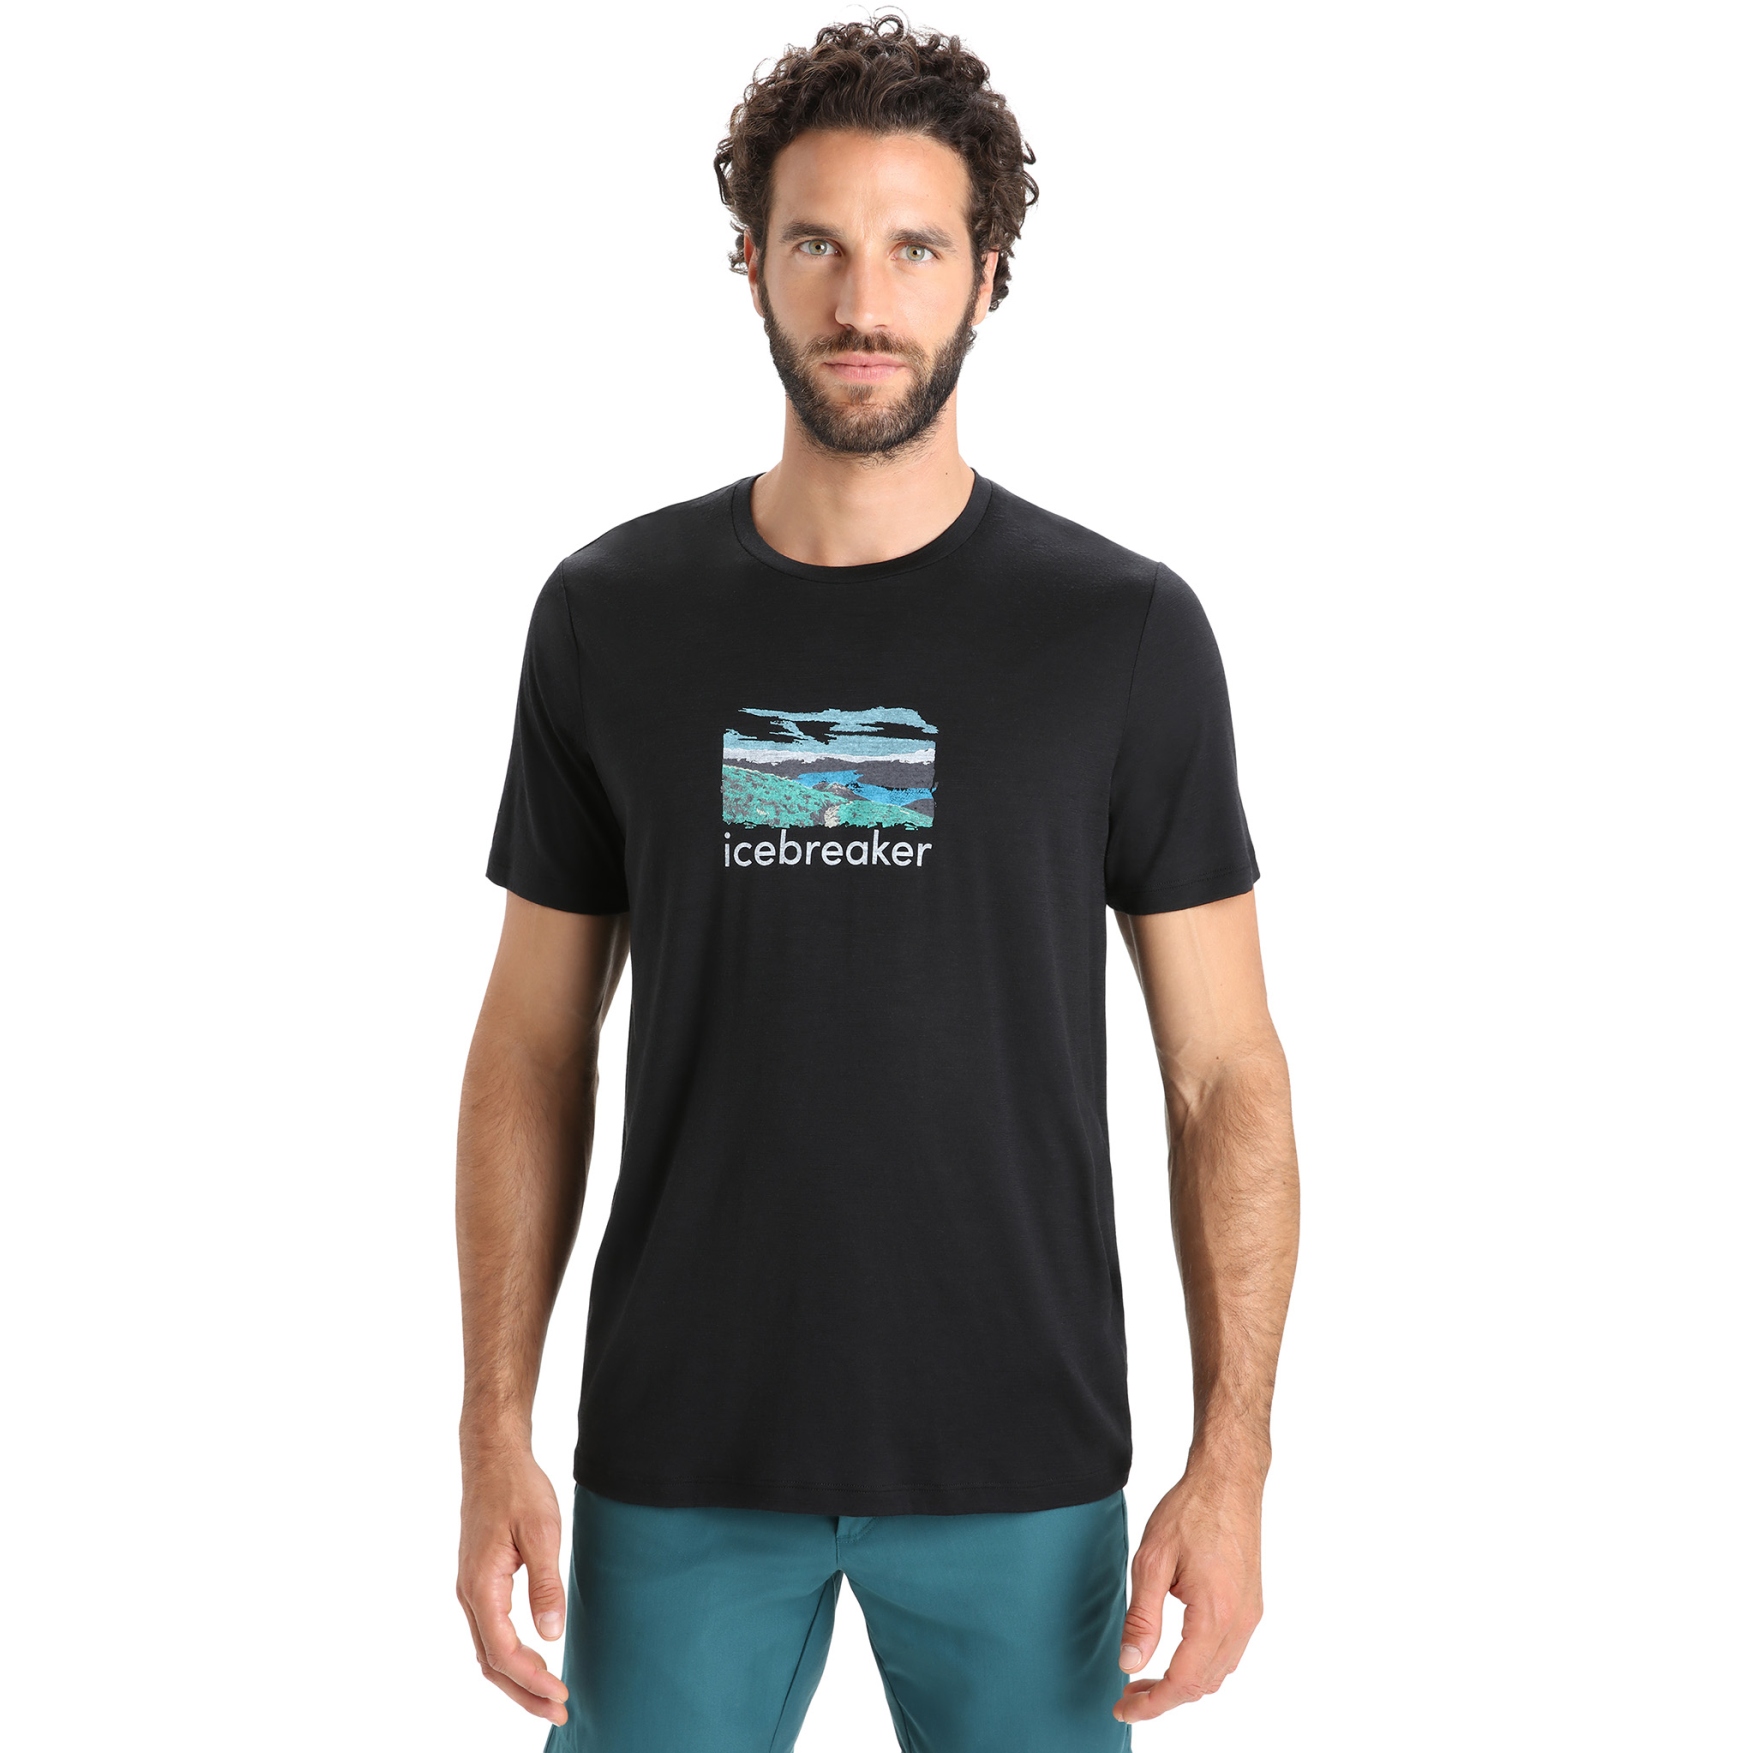 Produktbild von Icebreaker Tech Lite II Trailhead Herren T-Shirt - Schwarz